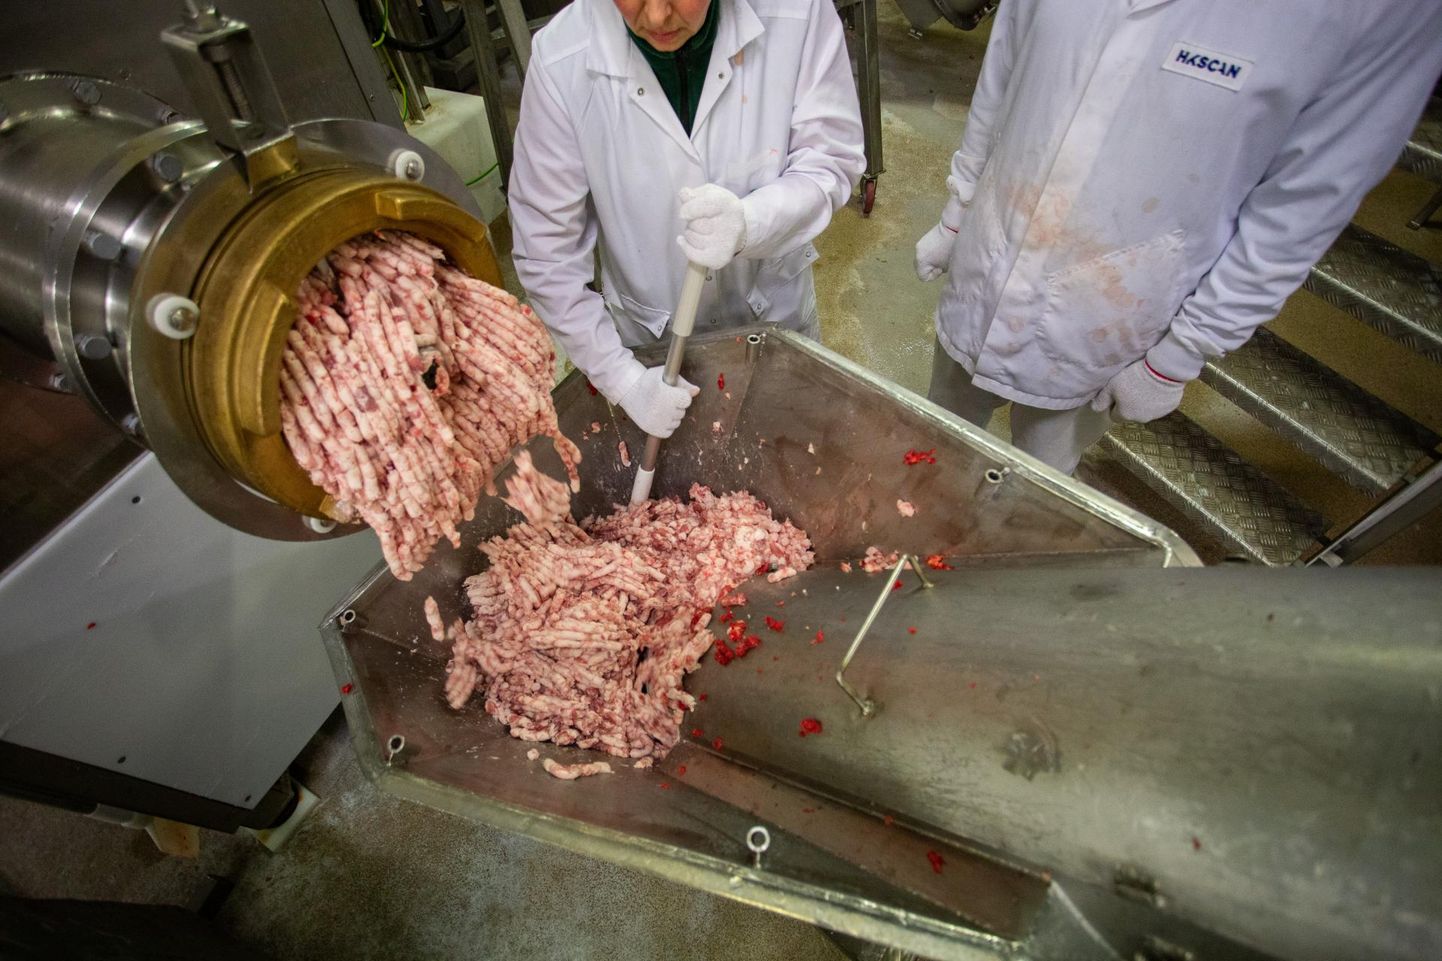 Hakkliha valmistamine HKScani Rakvere lihatööstuses: suurema rasvasisaldusega hakkliha on valmistatud rasvasemast lihast, näiteks sea esiosa läbikasvanud lihast, väiksema rasvasisaldusega seahakklihades on kasutusel taine sealiha sea tagaosast.